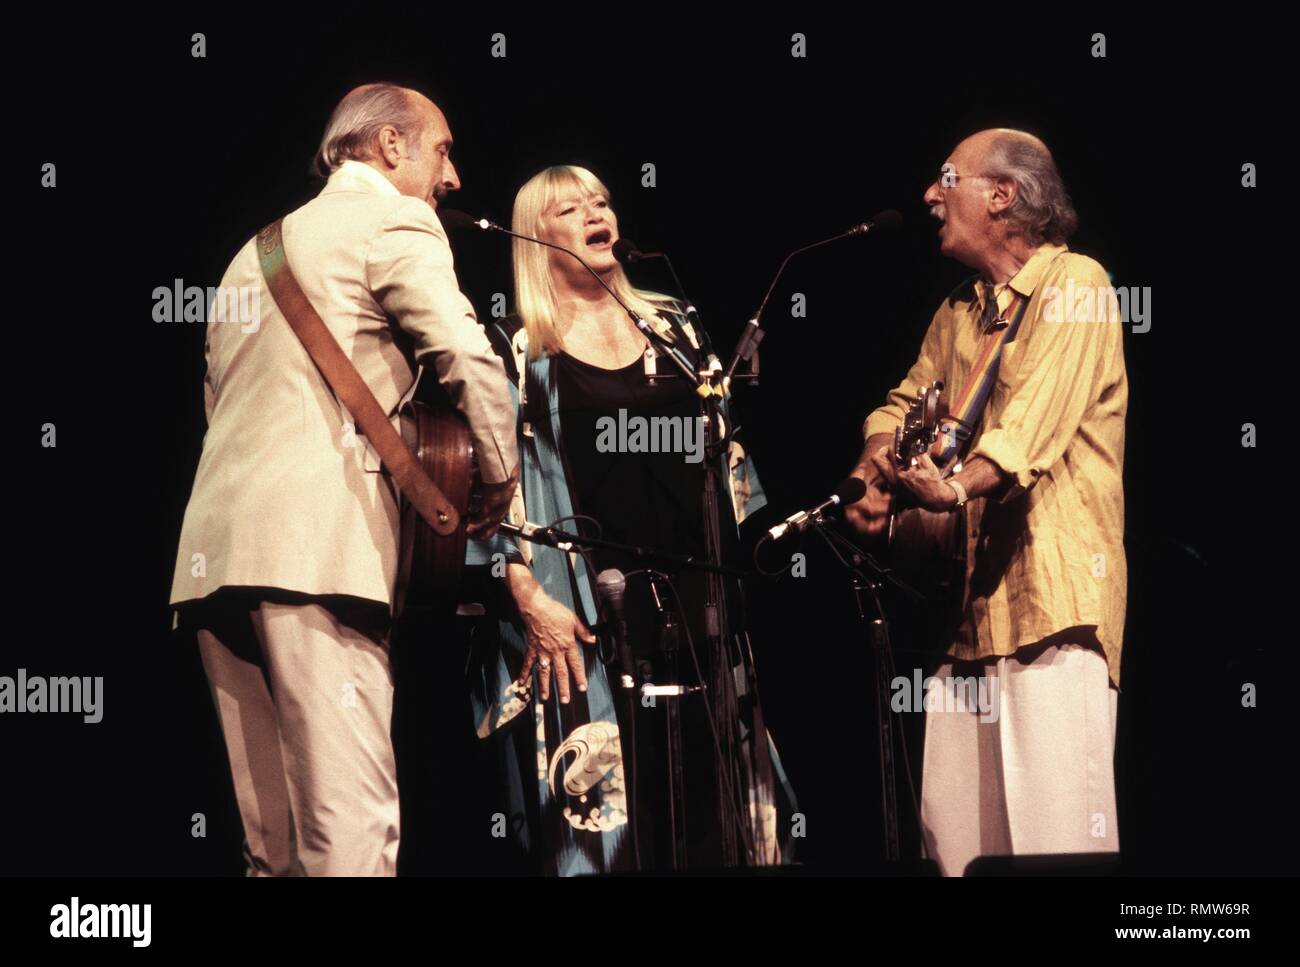 El canto popular trío de Pedro, Pablo y María se muestran realizando en el escenario durante un concierto 'live' apariencia. Foto de stock